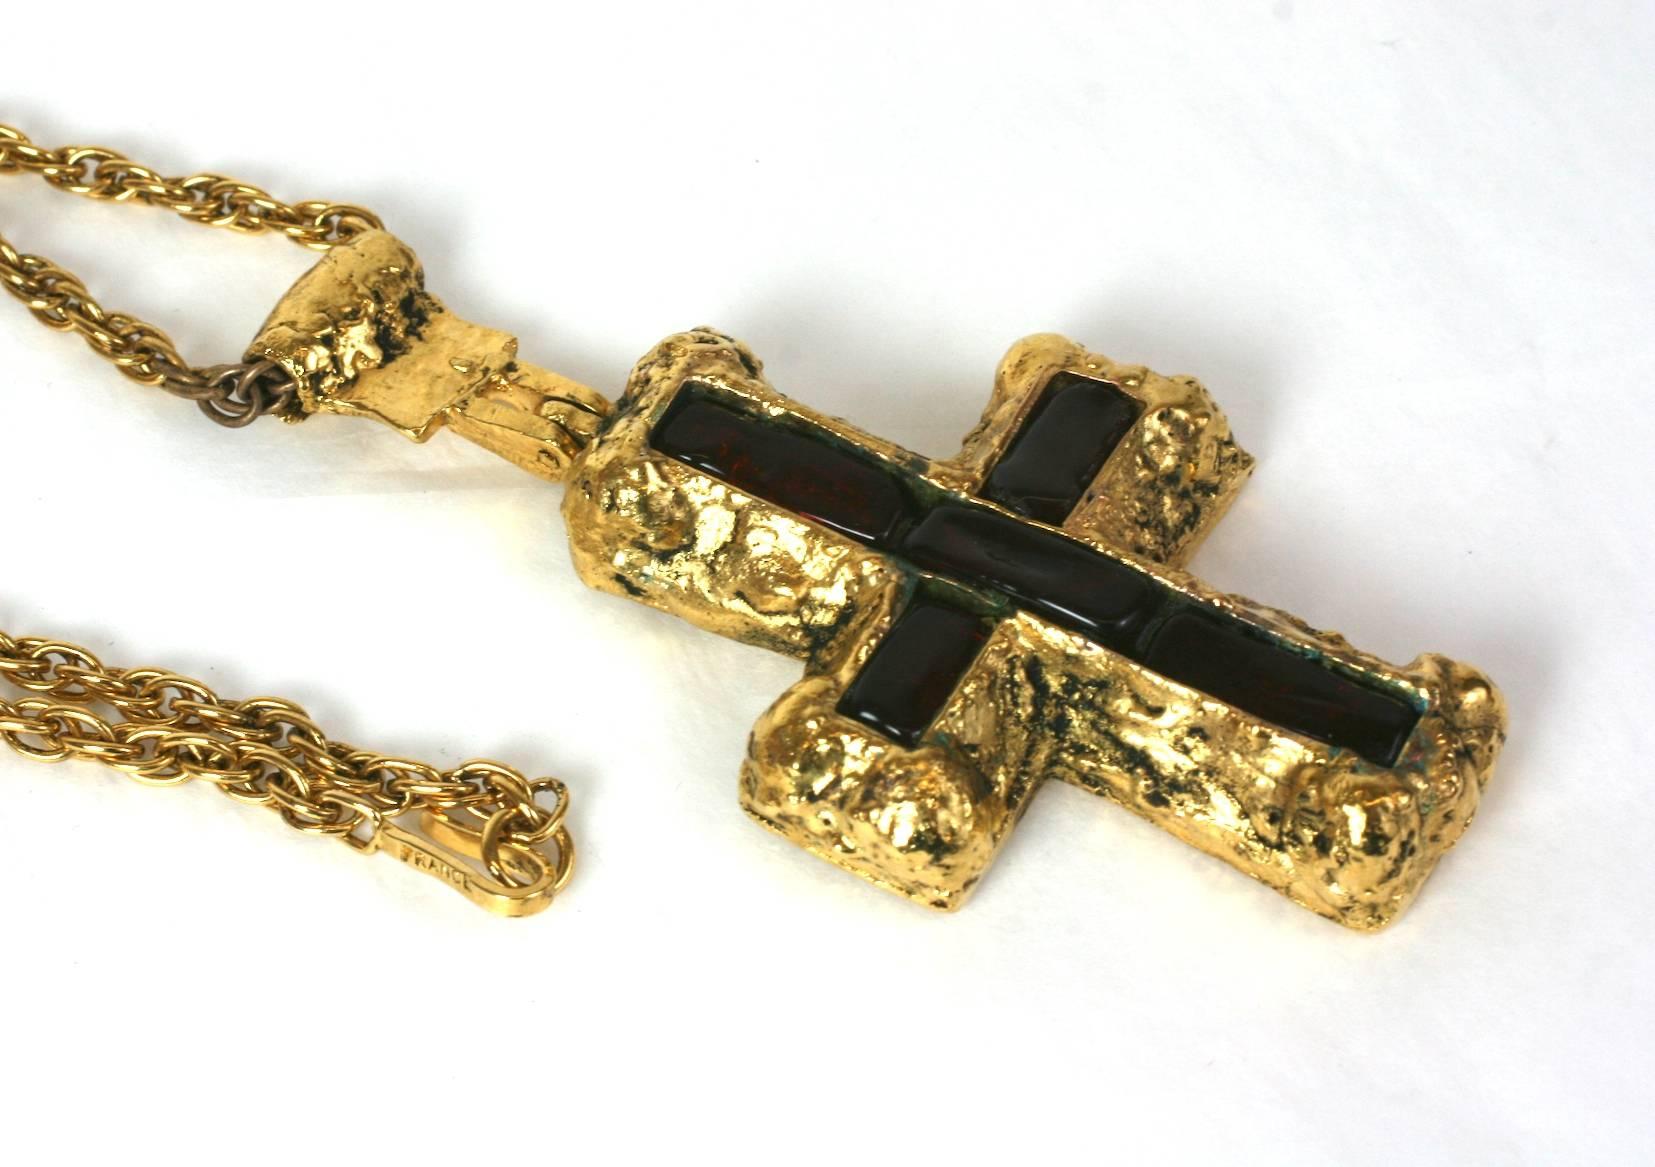 Baguette Cut Important CoCo Chanel Personal Medieval Cruciform Pendant Necklace